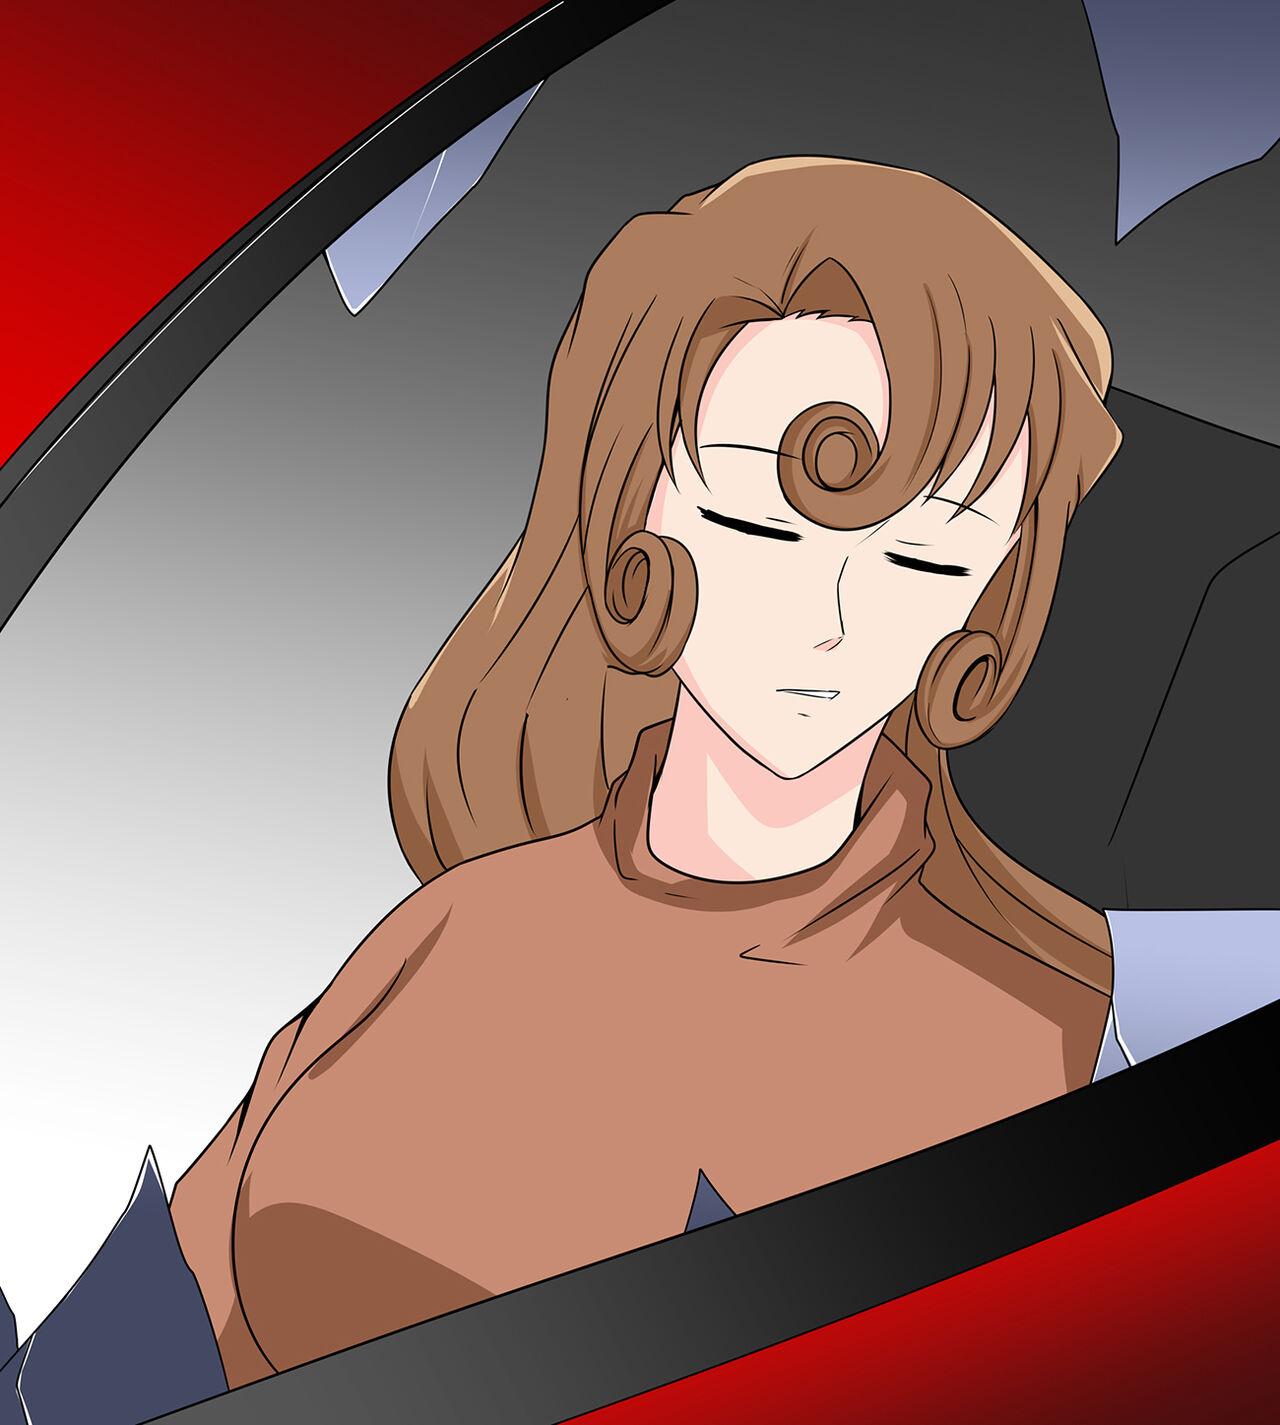 Yukiko kudo kidnapping case 2 4